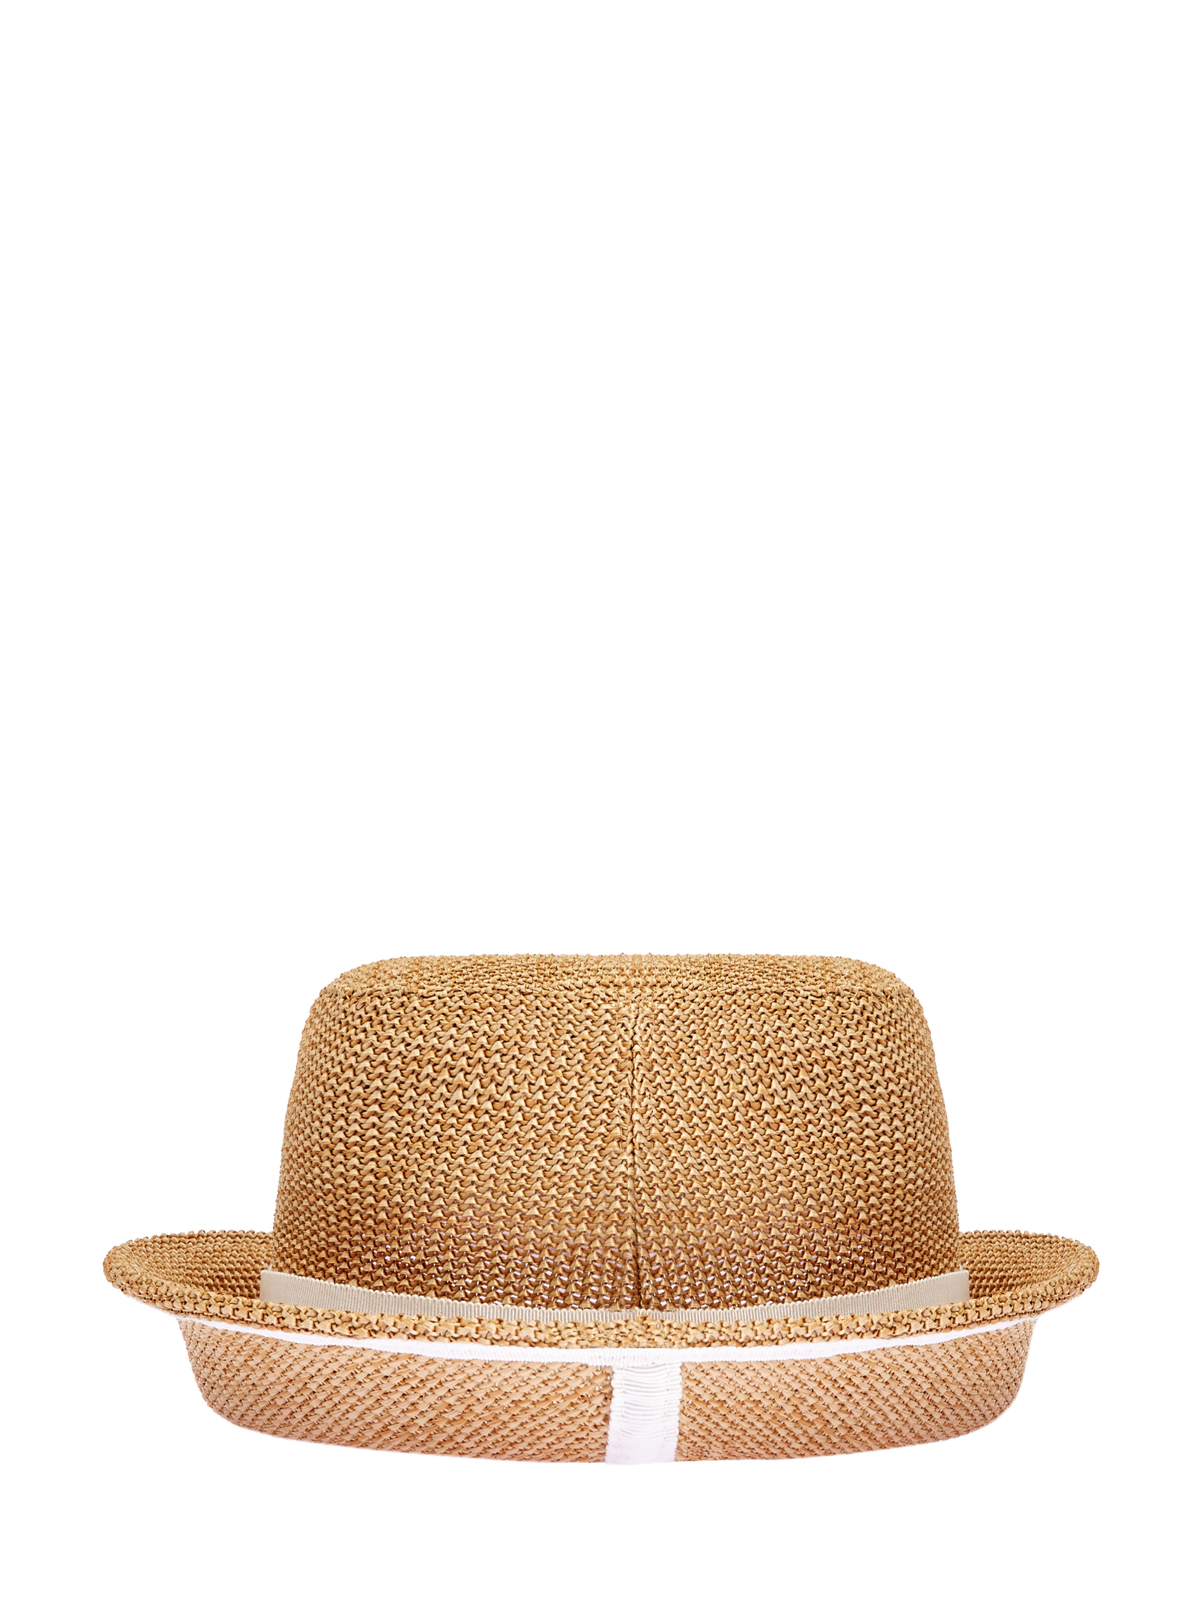 Плетеная шляпа-трилби с вышивкой ручной работы ERMANNO SCERVINO, цвет бежевый, размер L - фото 2